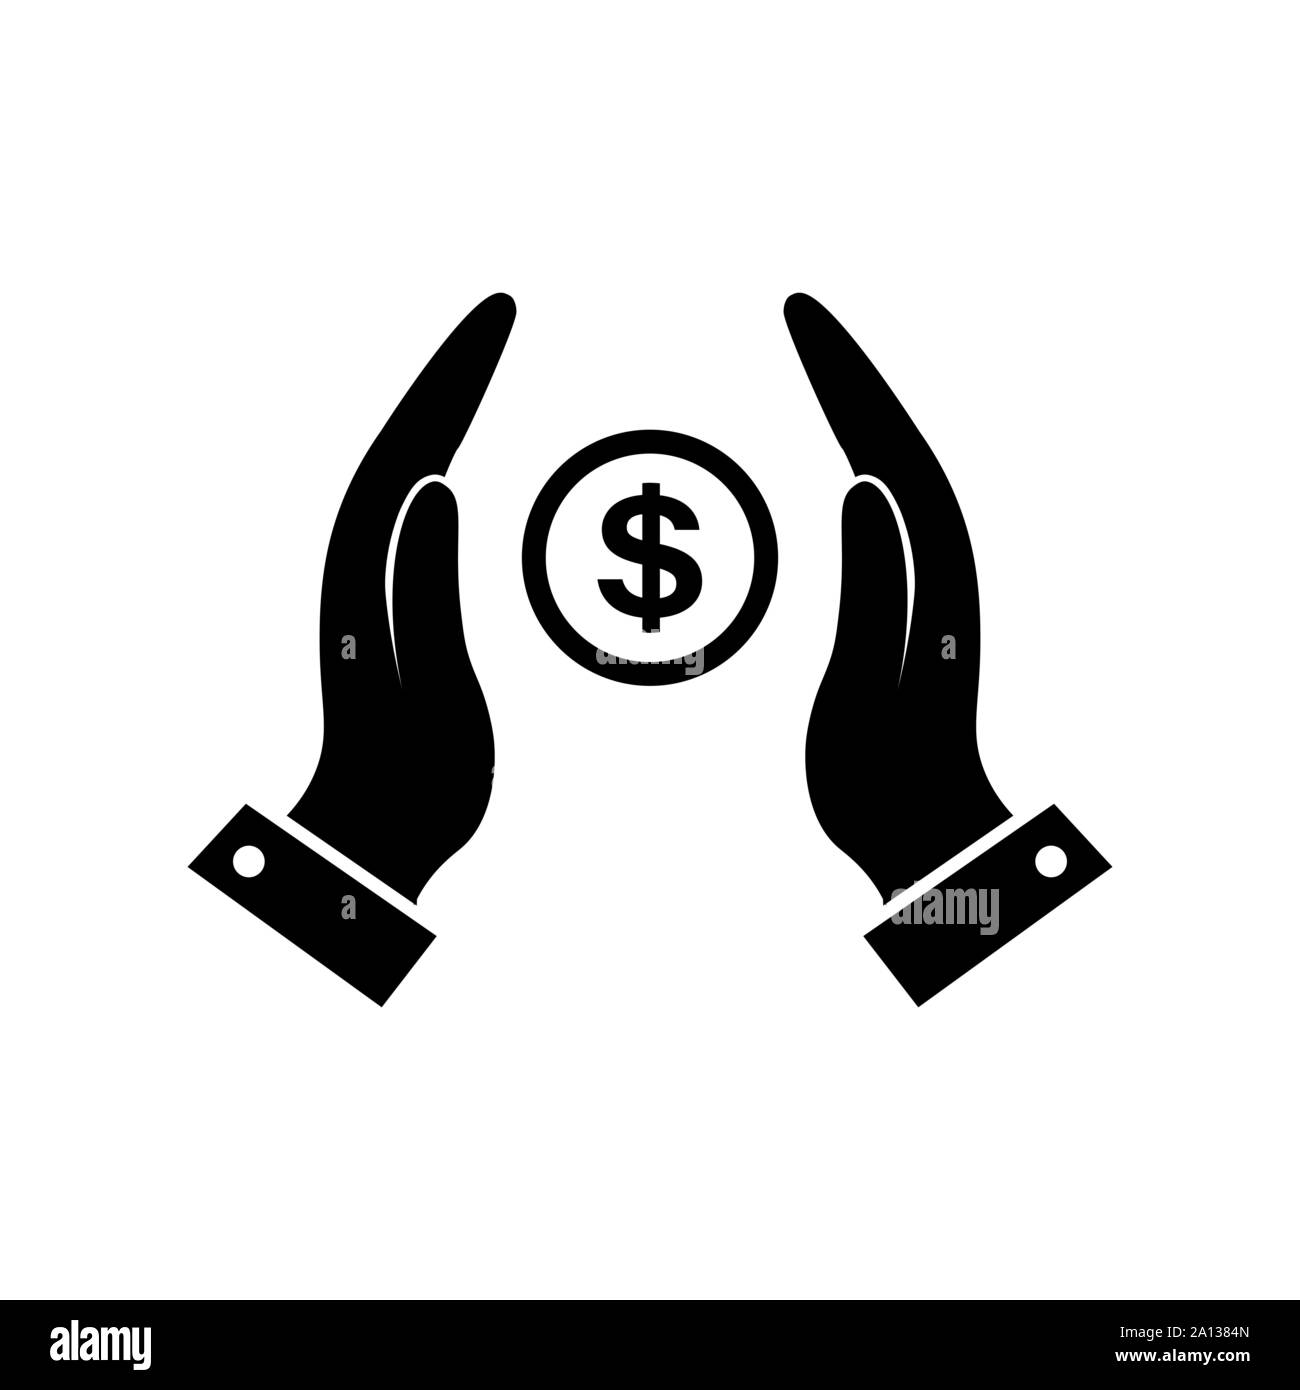 Vektor Geld in Händen Symbol in schwarz. Stock Vektor